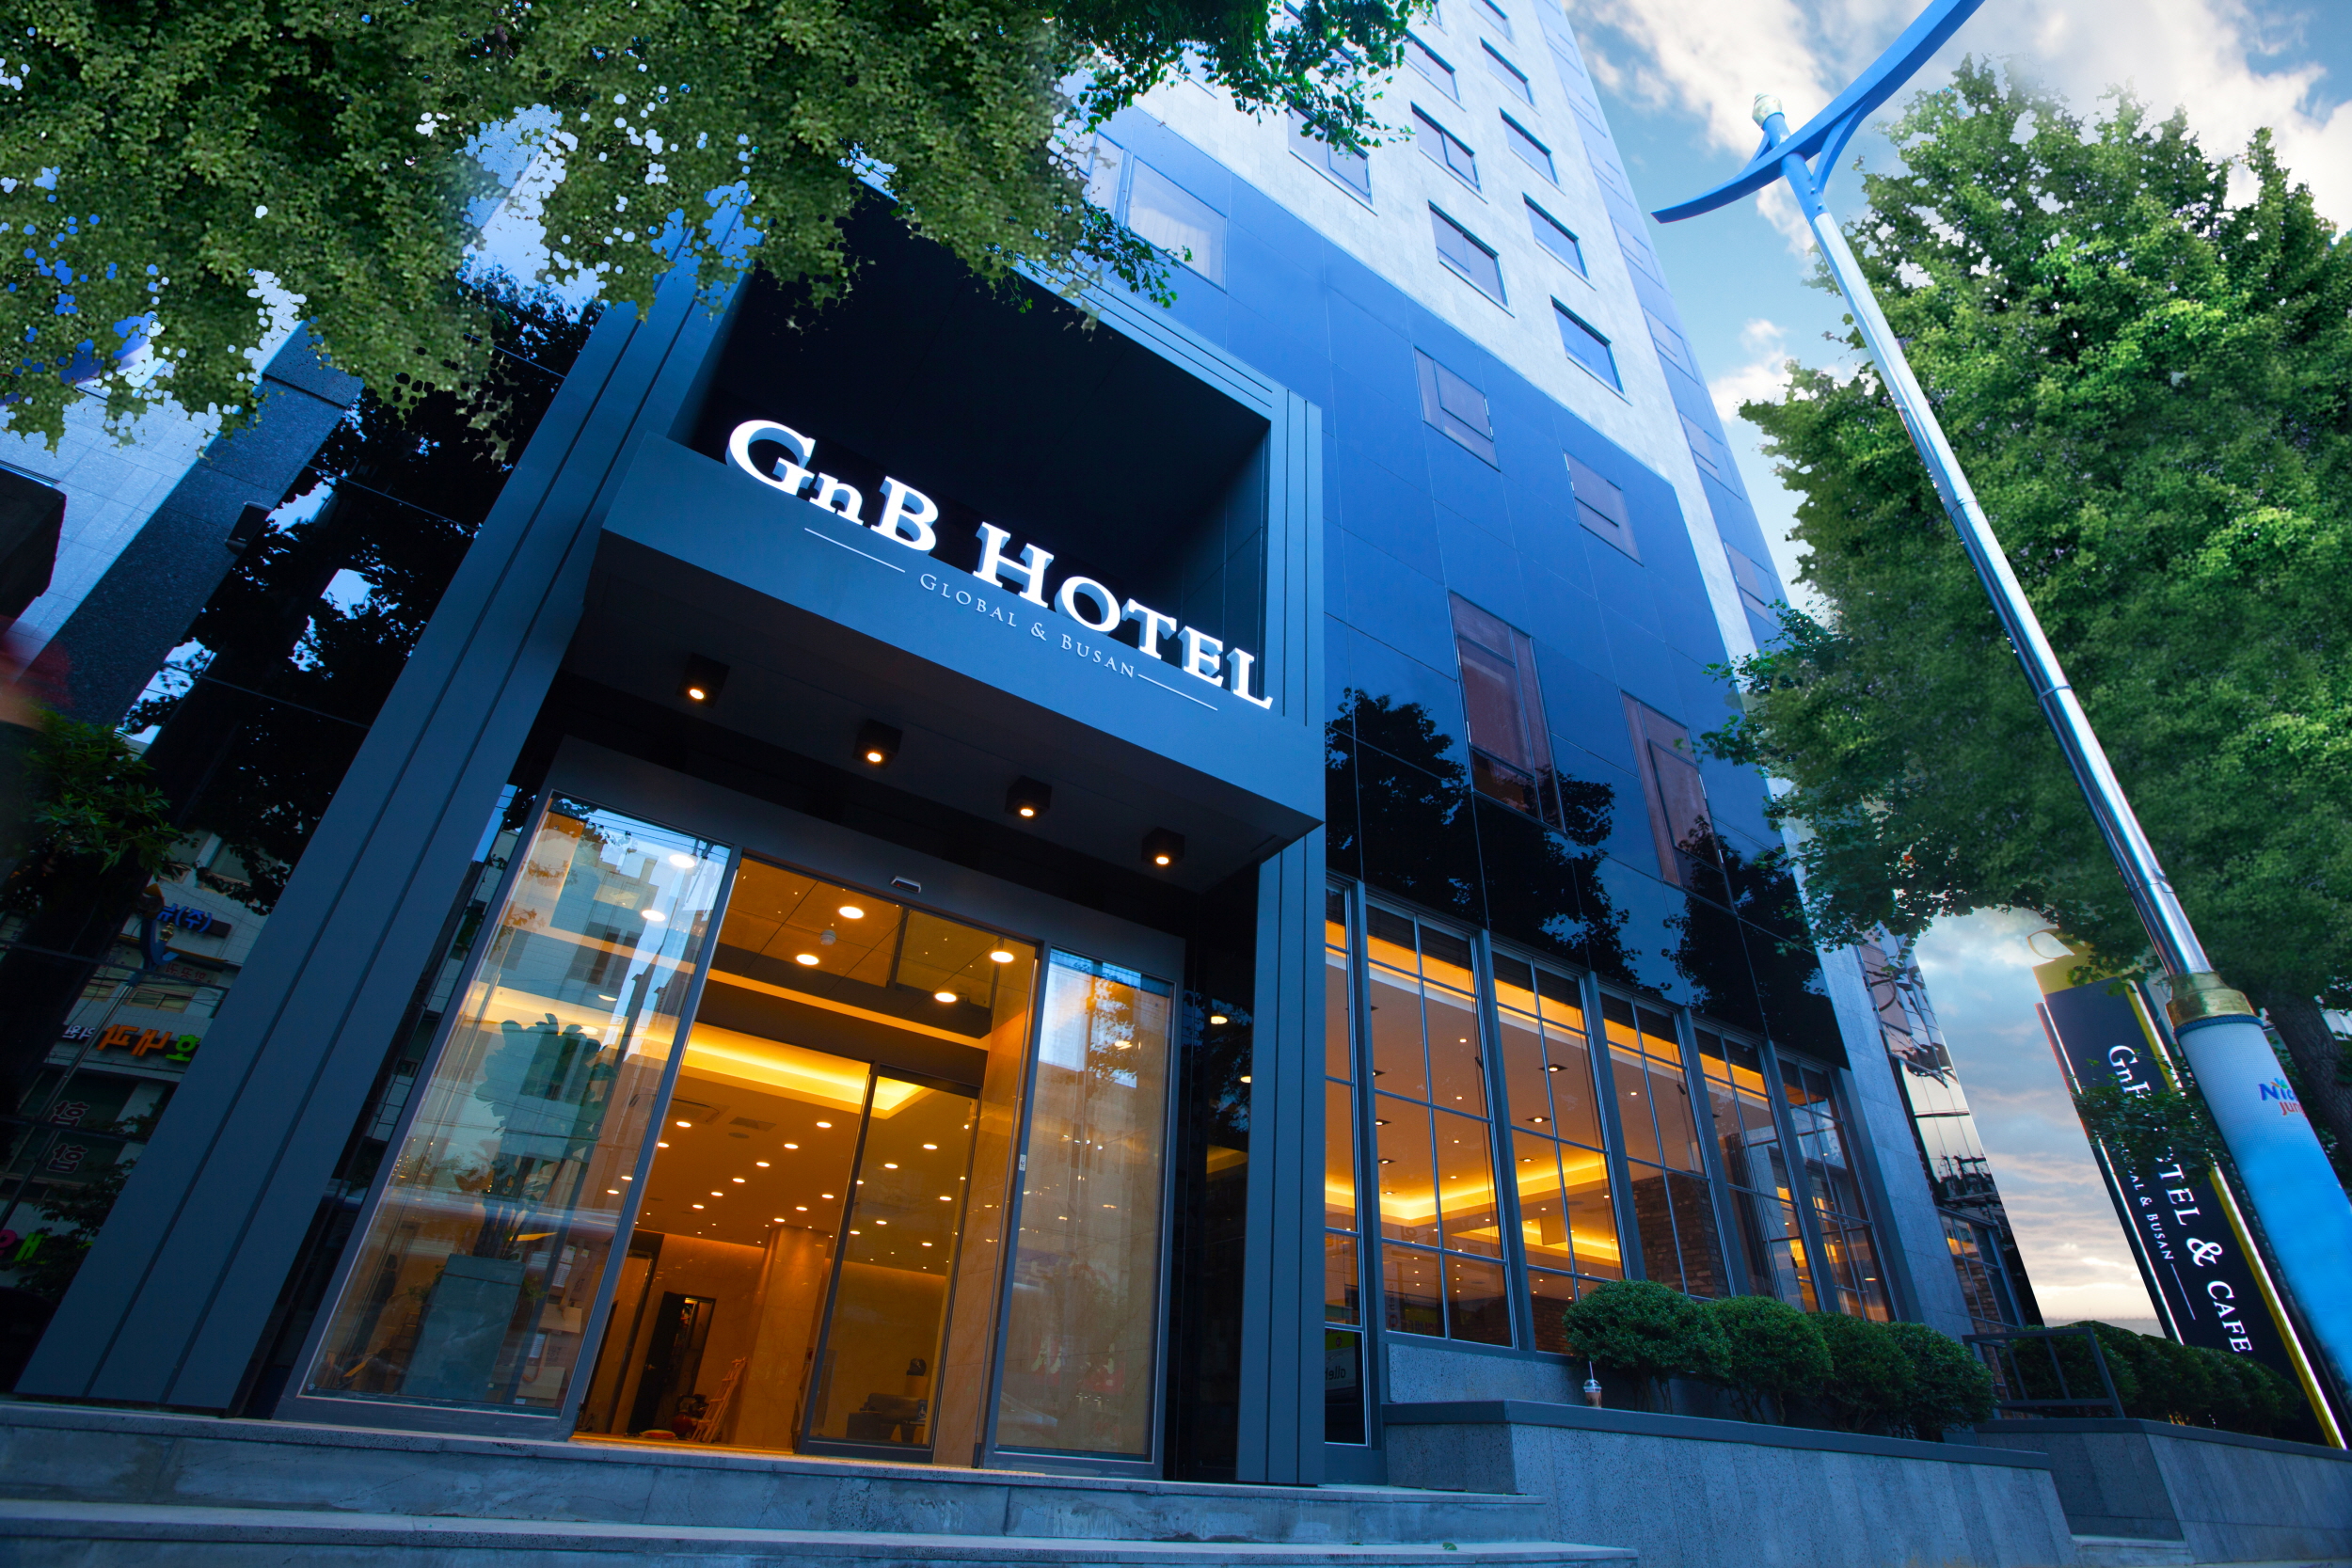 ジエンビホテル Gnb Hotel 設備 アメニティ 基本情報 楽天トラベル